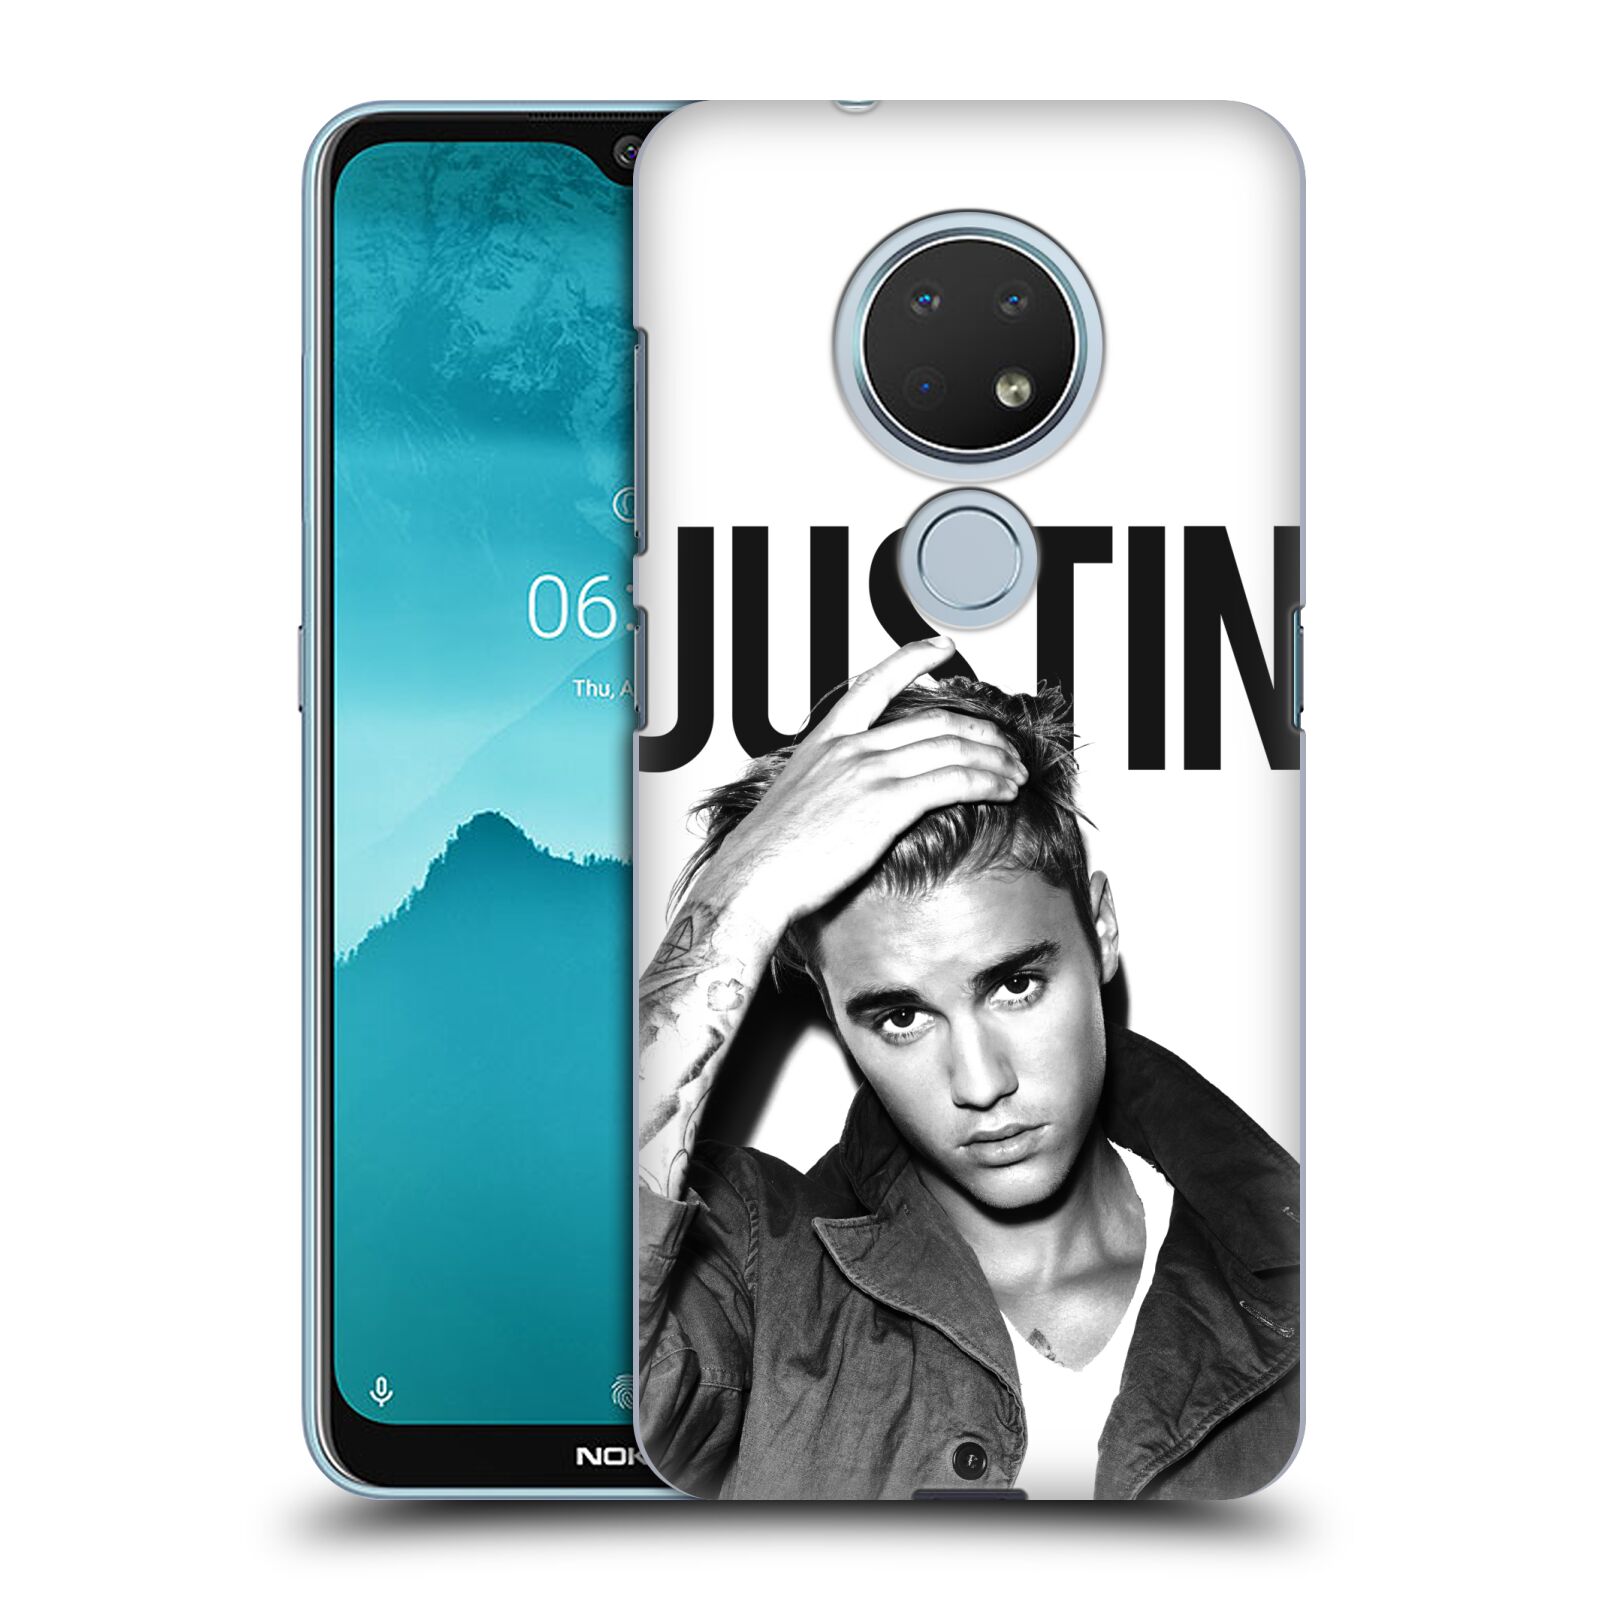 Pouzdro na mobil Nokia 6.2 - HEAD CASE - Justin Bieber foto Purpose černá a bílá